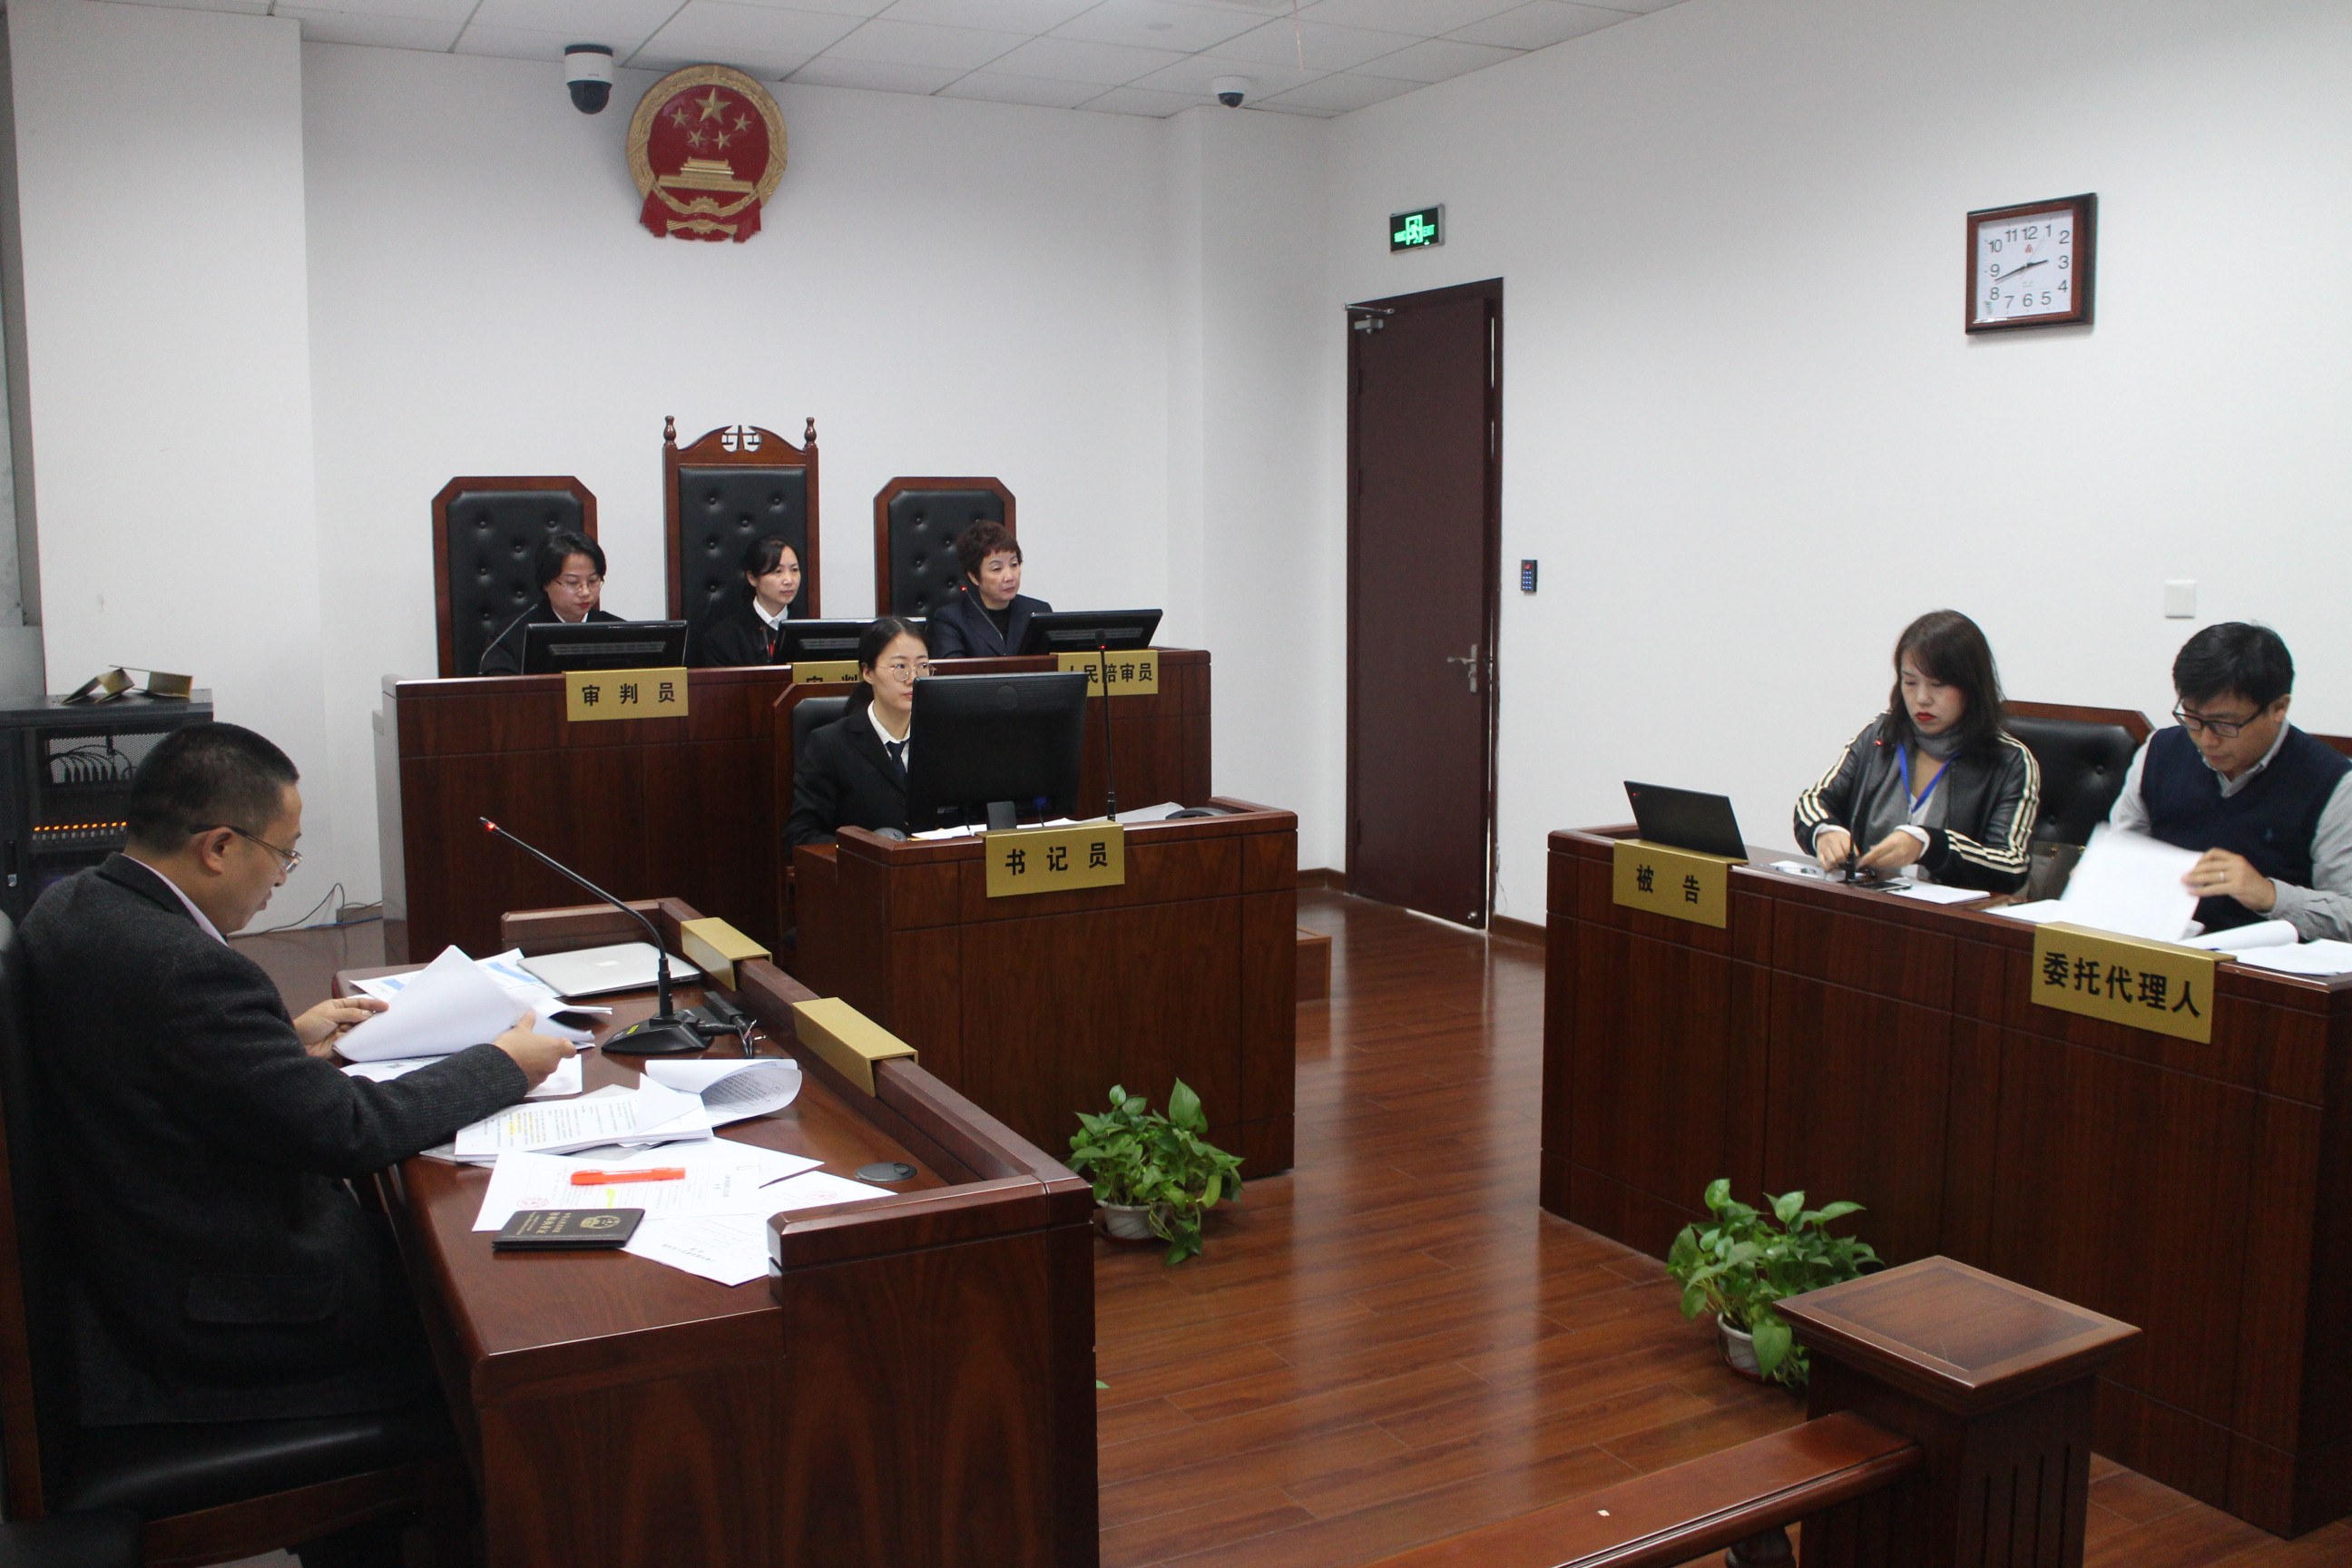 缩短到3公里,浦东法院临港新片区审判站首次开展商事纠纷案件巡回审判